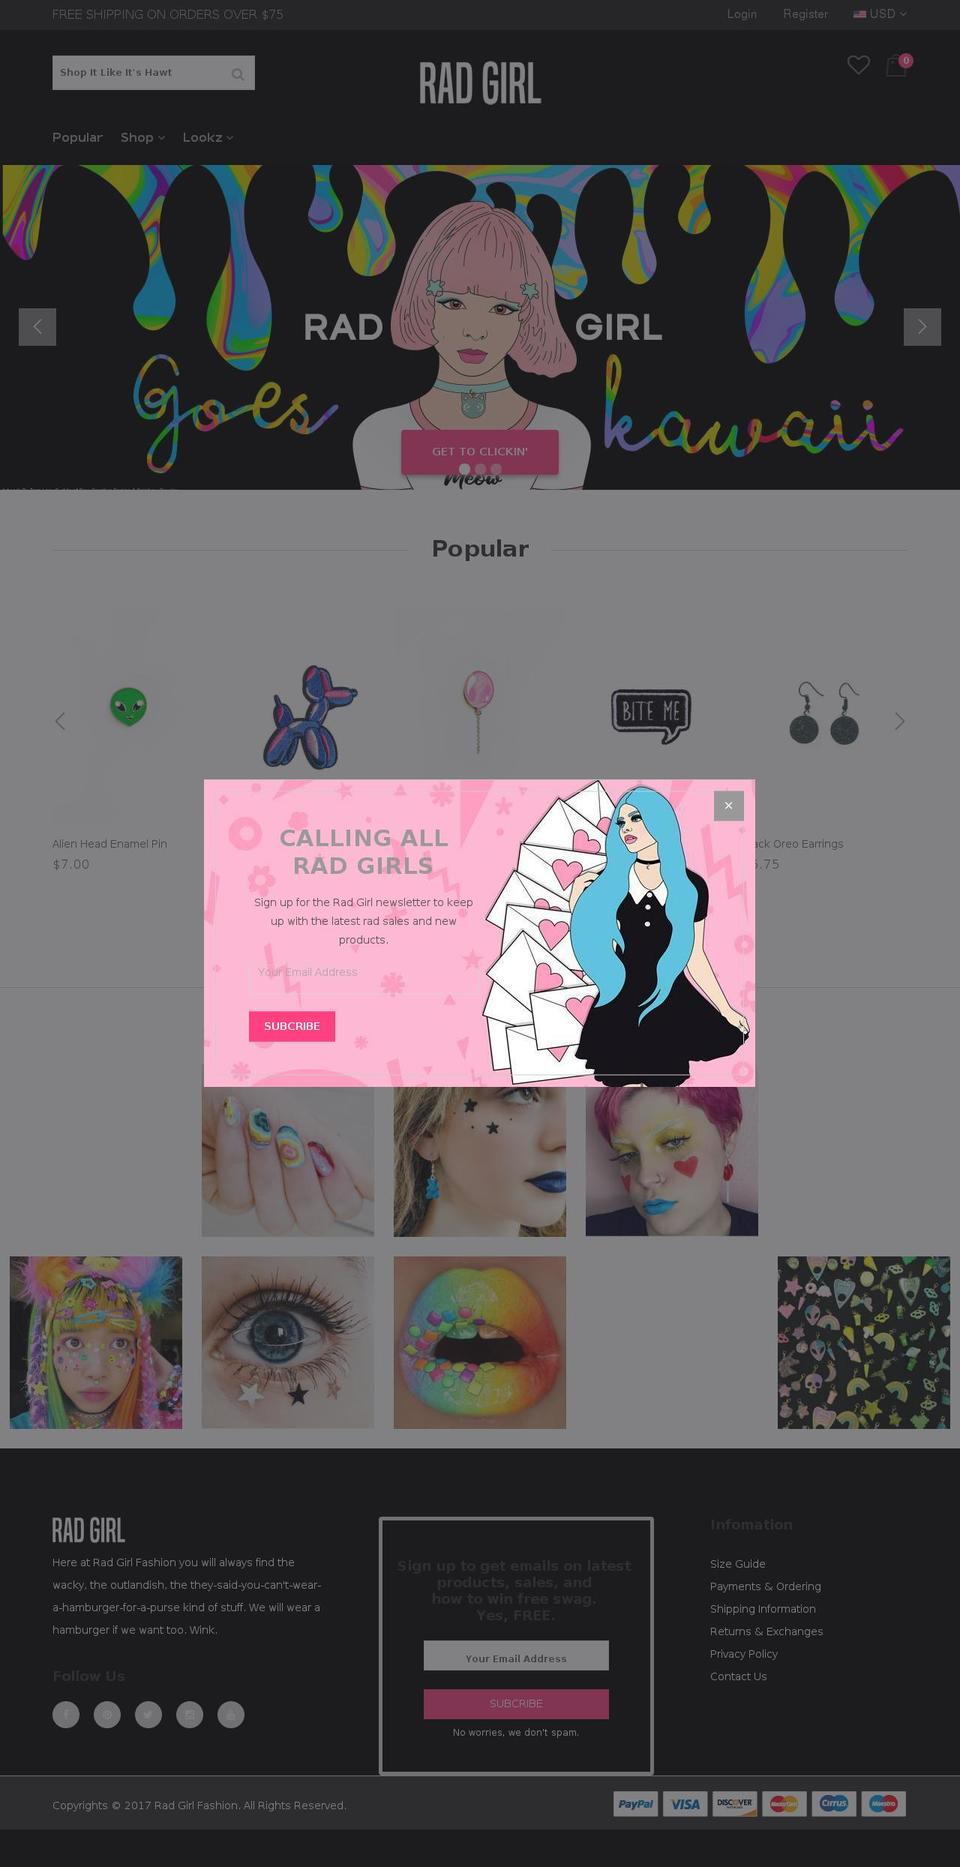 themes-base-myshopify-novetty-07-ver1-0-2 Shopify theme site example radgirl.fashion